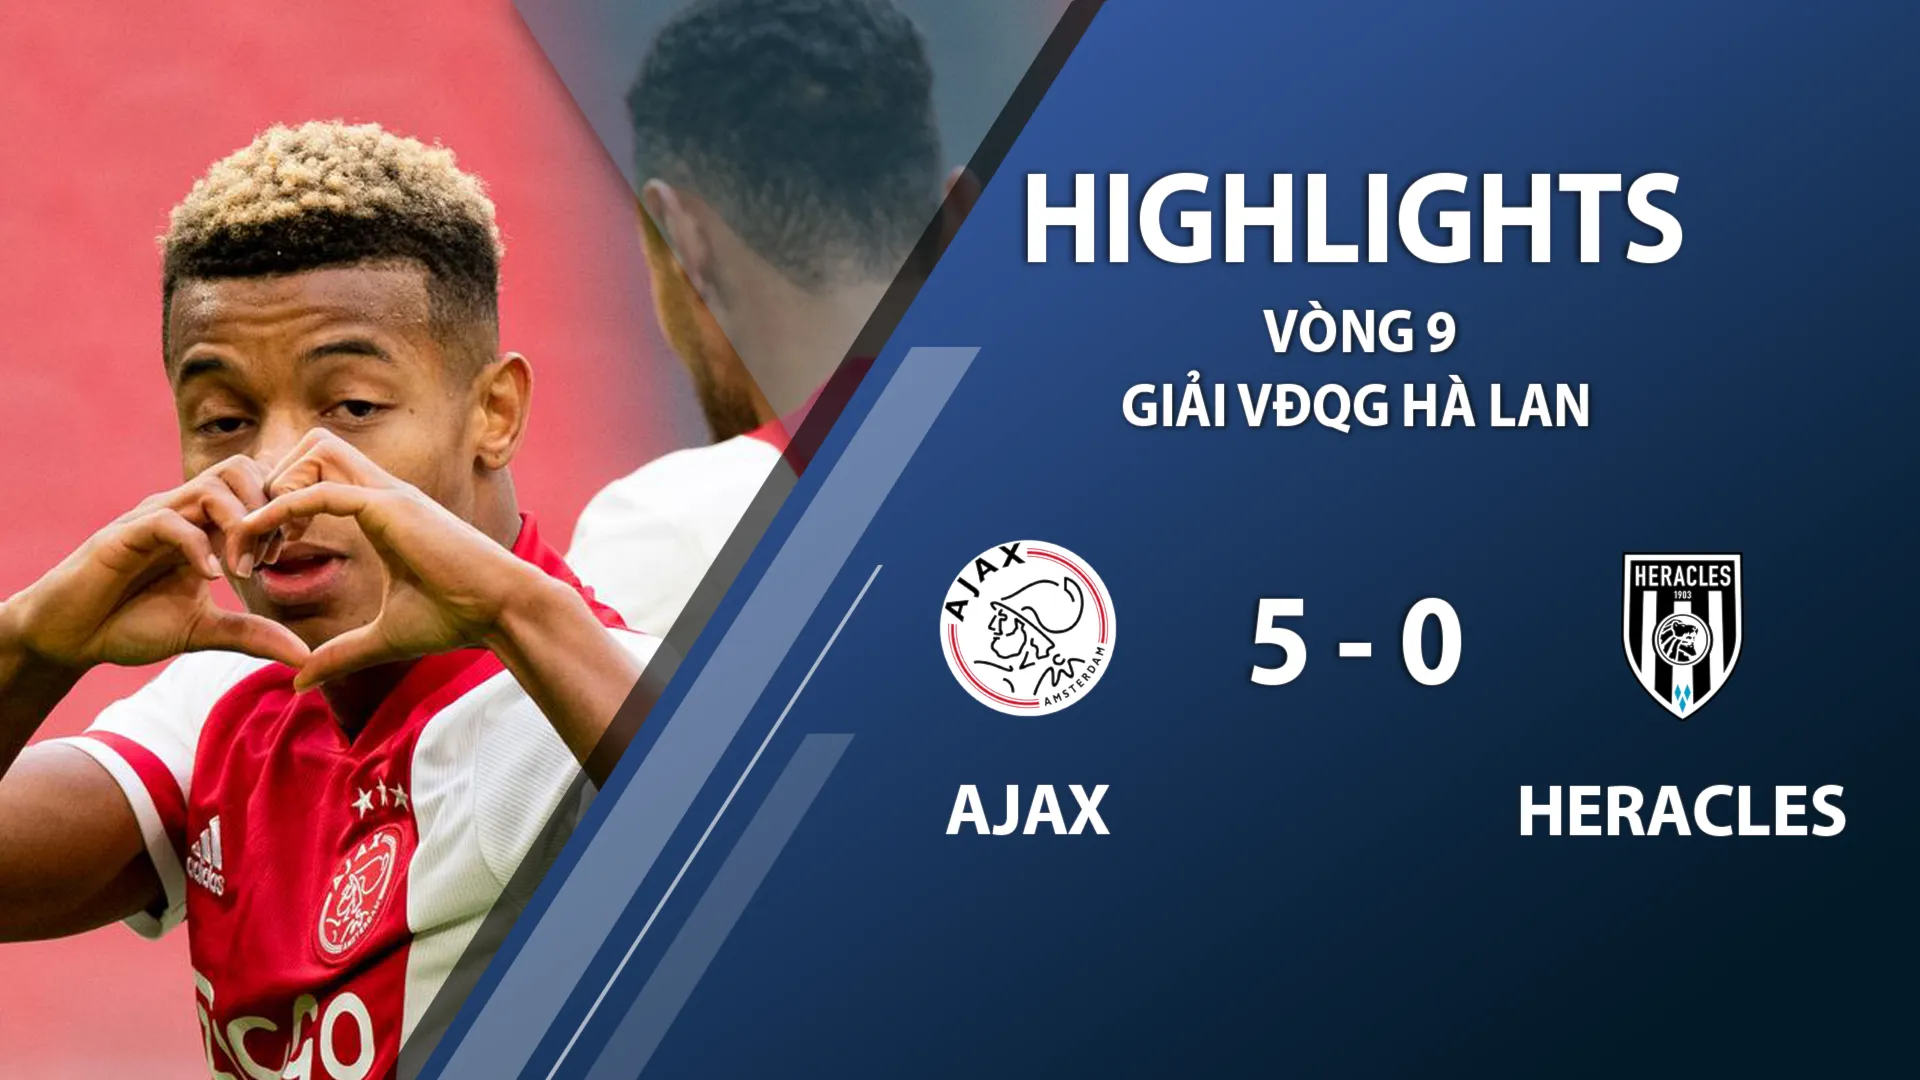 Highlights Ajax 5-0 Heracles (vòng 9 giải VĐQG Hà Lan 2020/21)